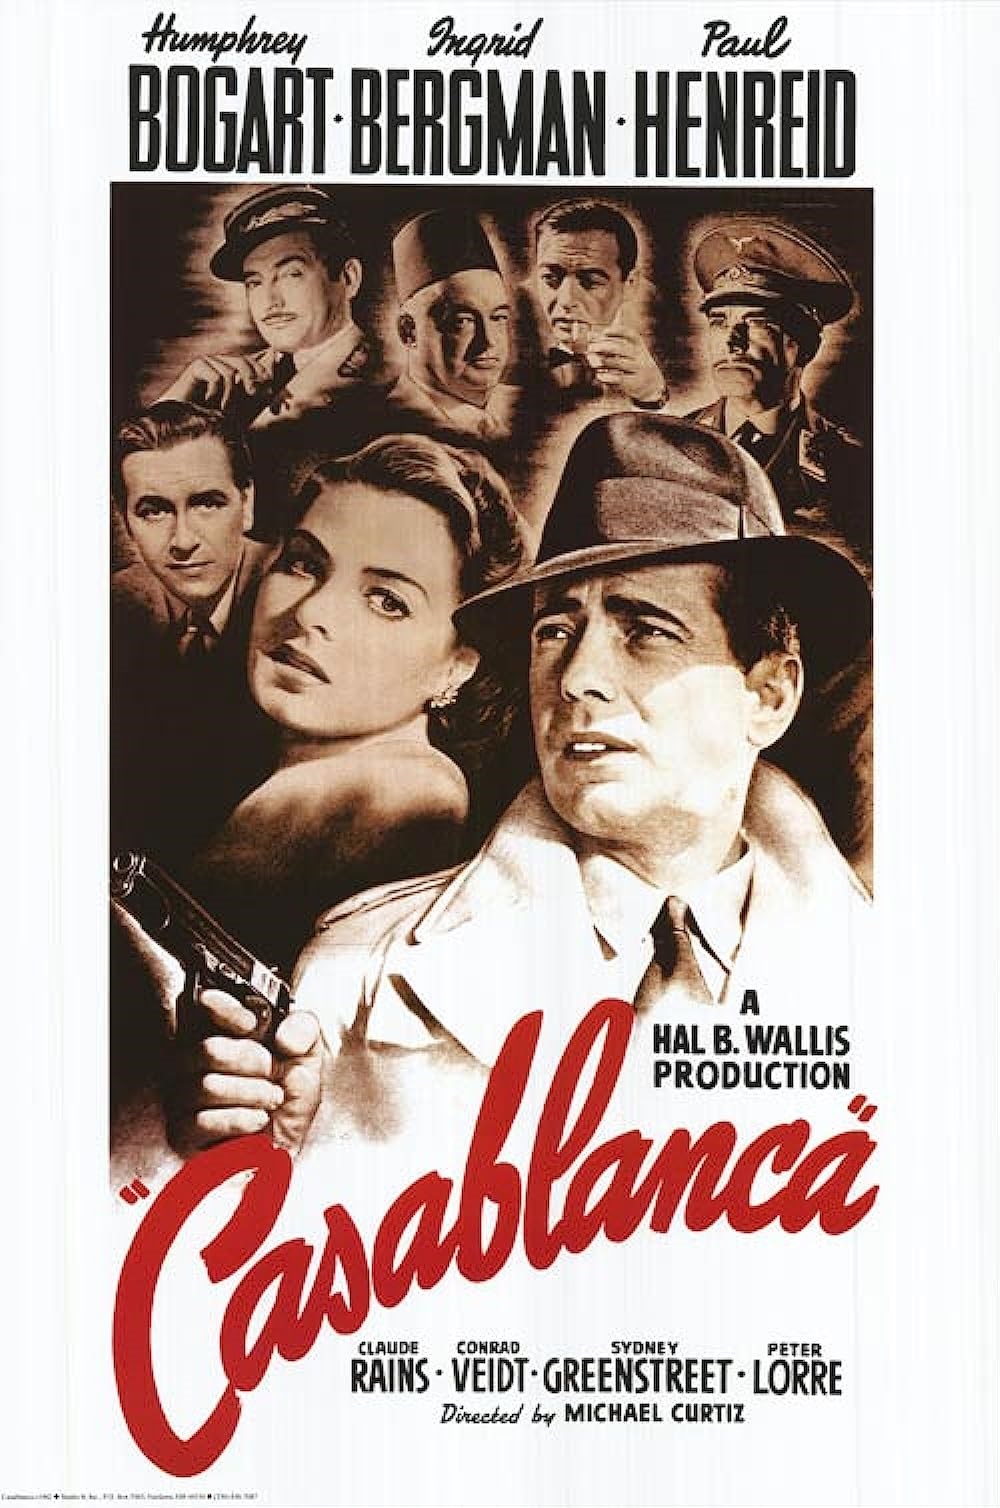 oscar ödülü alan filmler Casablanca